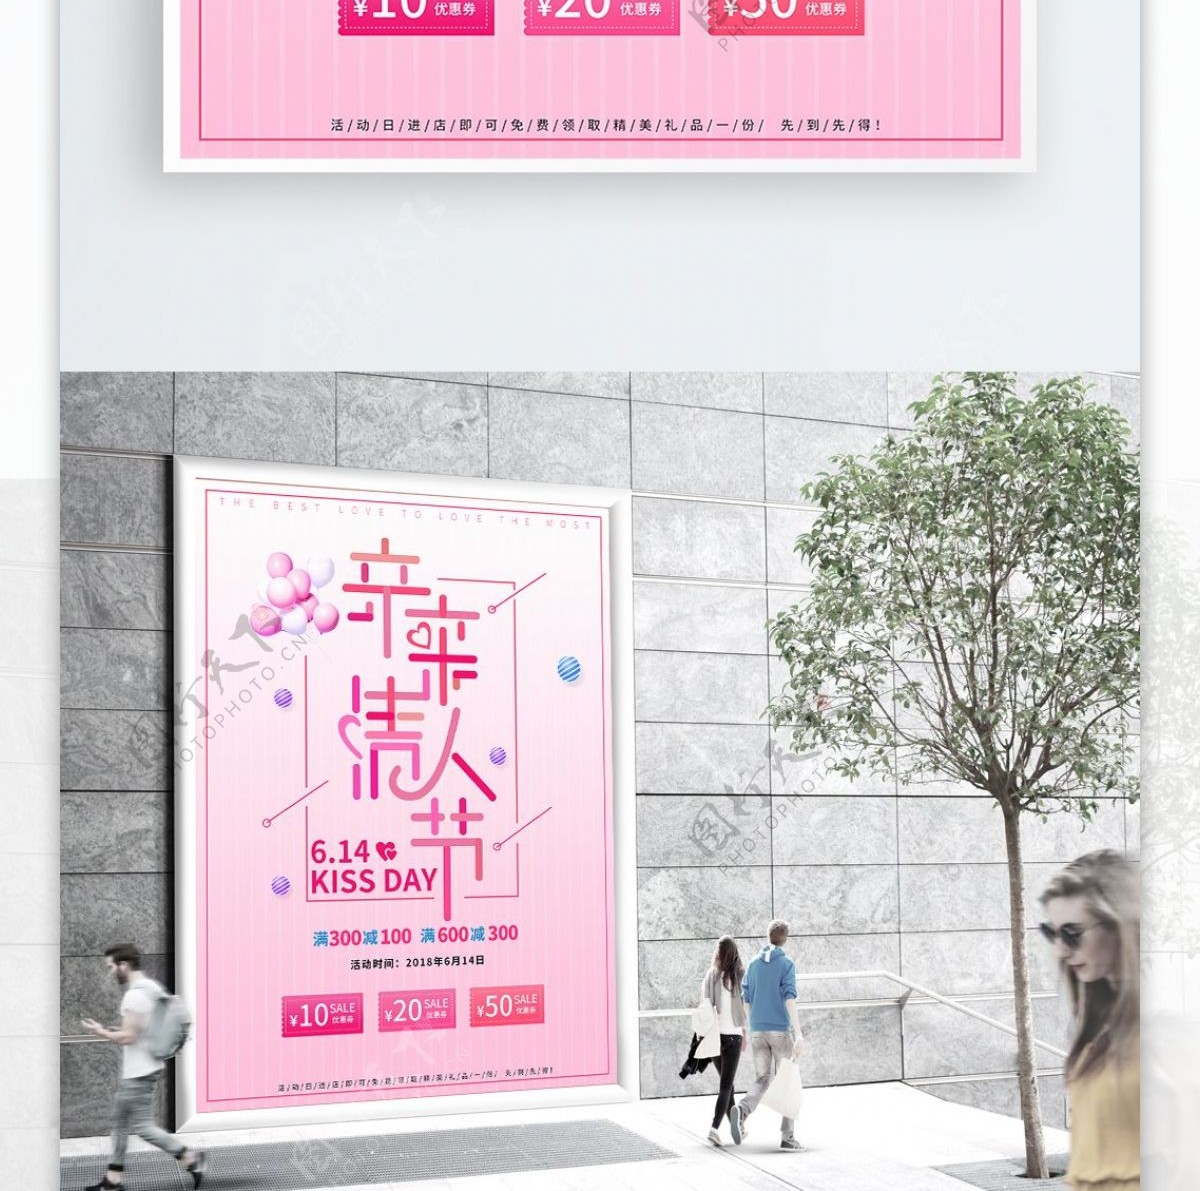 多彩叠加创意字设计风格亲亲情人节海报